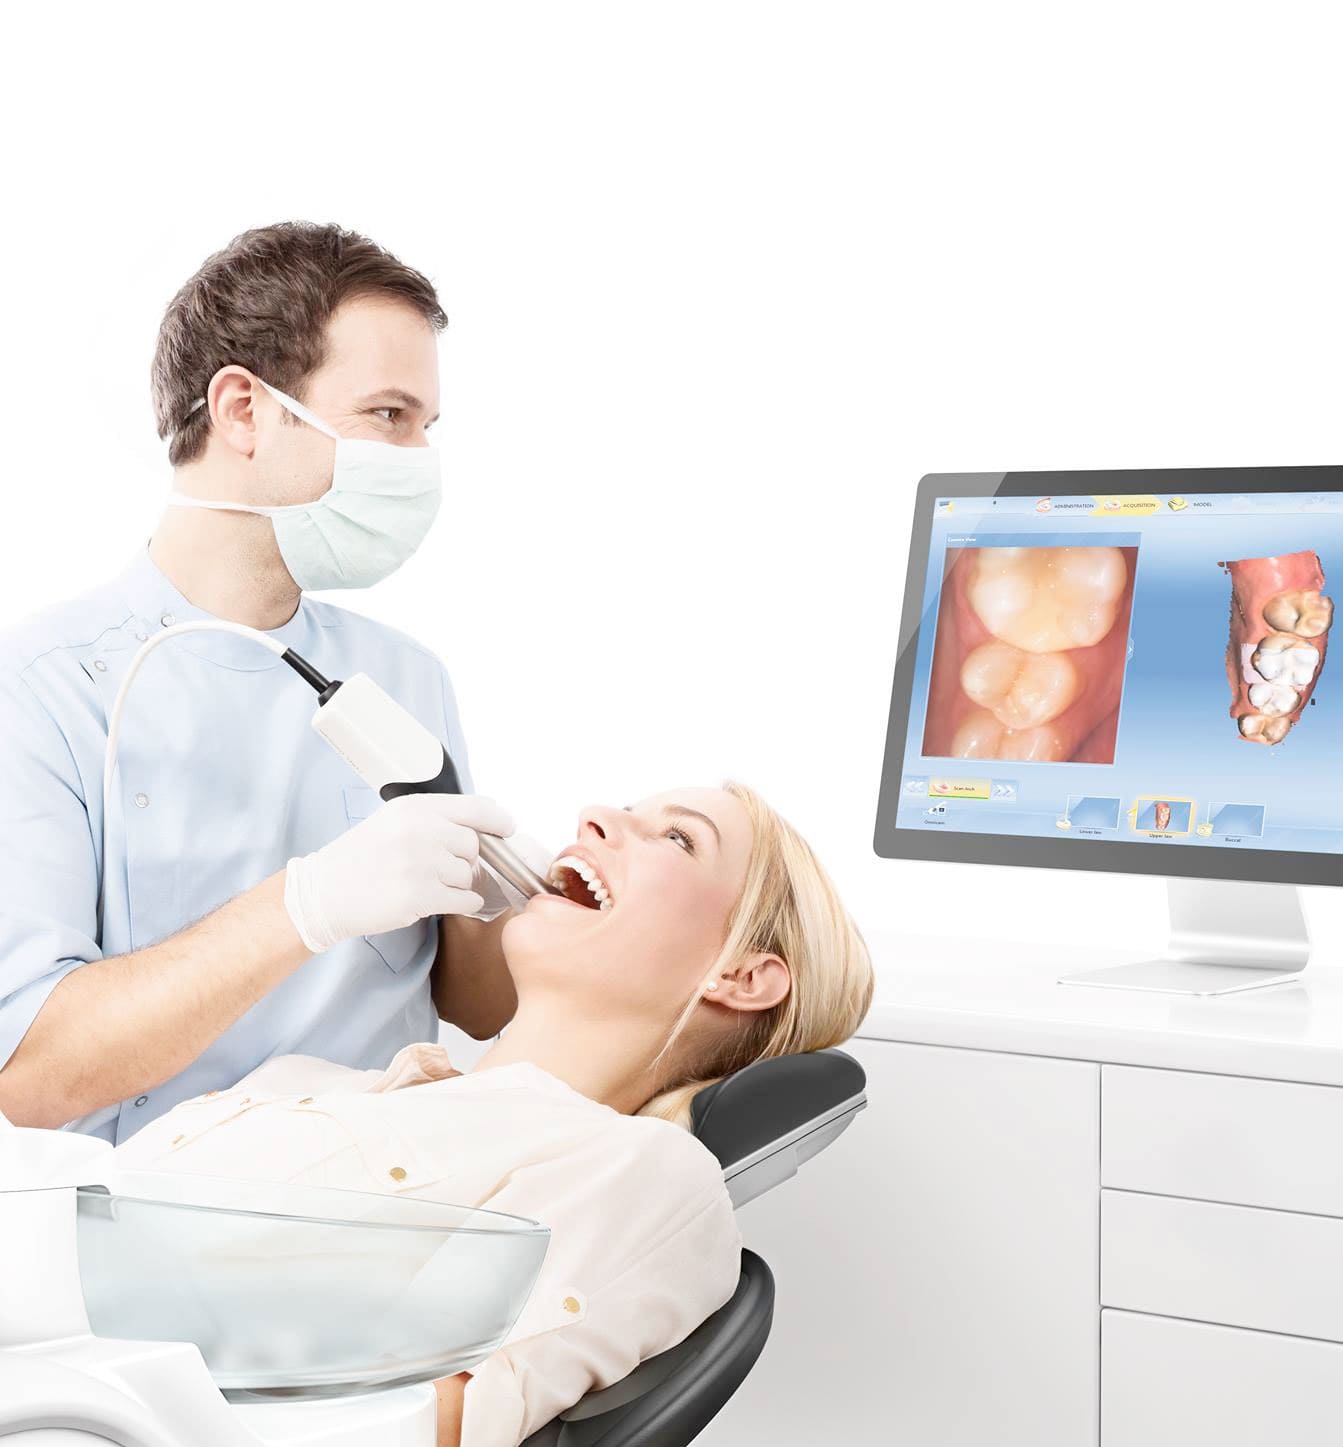 Die zahnärztliche Bildgebung mit Ultraschall ist schmerzlos, erschwinglich, nicht-invasiv und hat keine bekannten Nebenwirkungen.